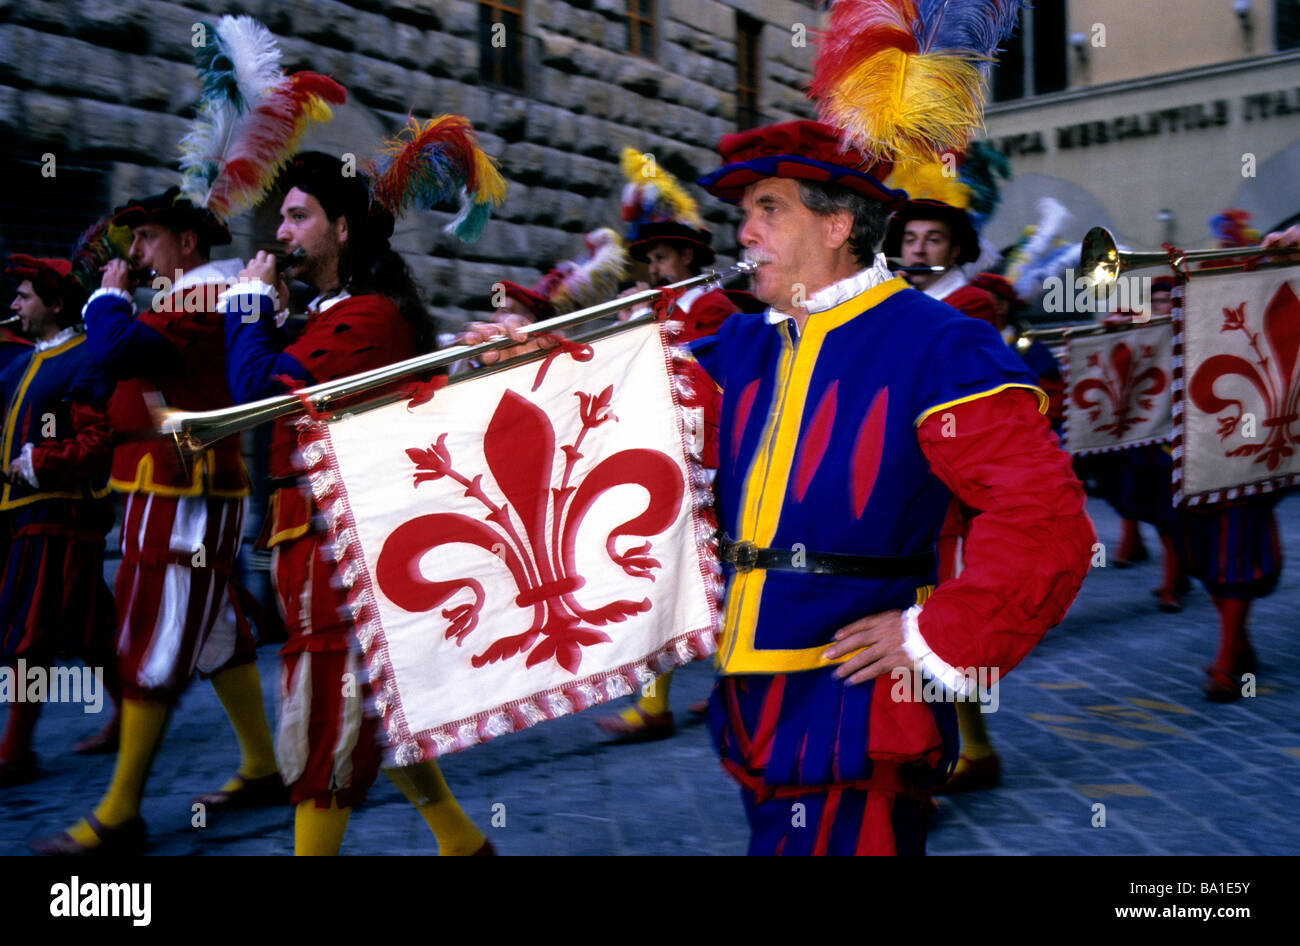 Un homme en uniforme traditionnel florentin jouant une longue trompette arborant symbolisme héraldique de lors d'un défilé à Florence Banque D'Images